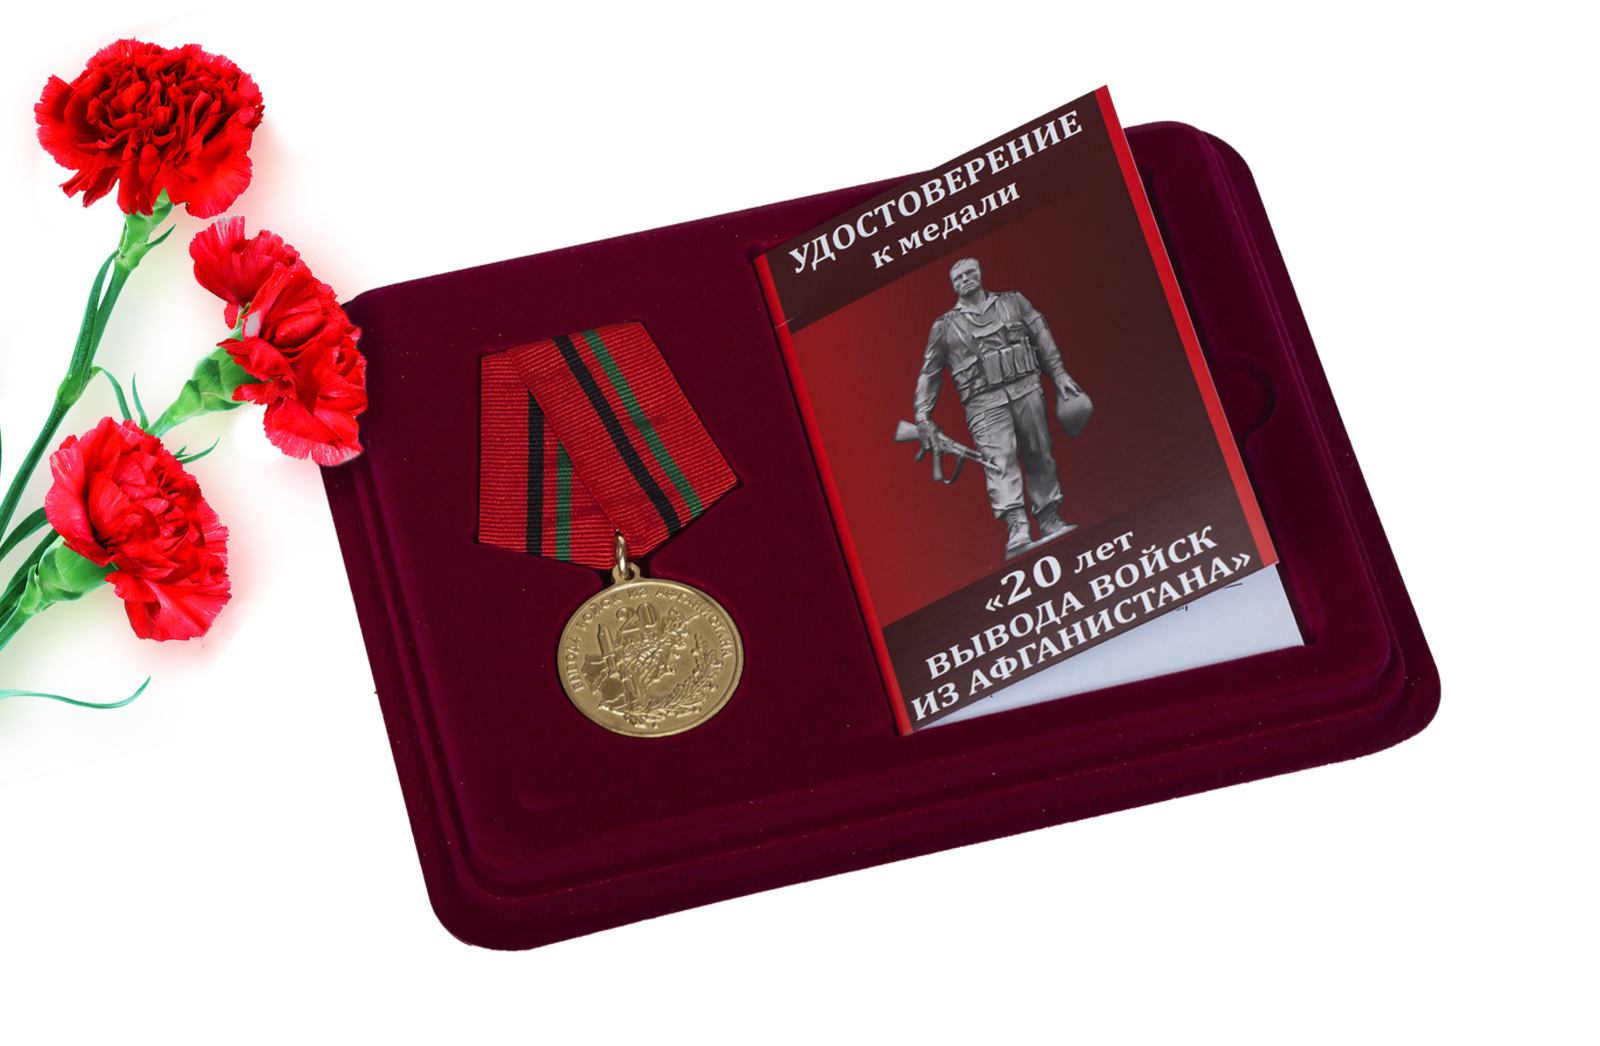 Купить памятную медаль 20 лет вывода войск из Афганистана оптом или в розницу